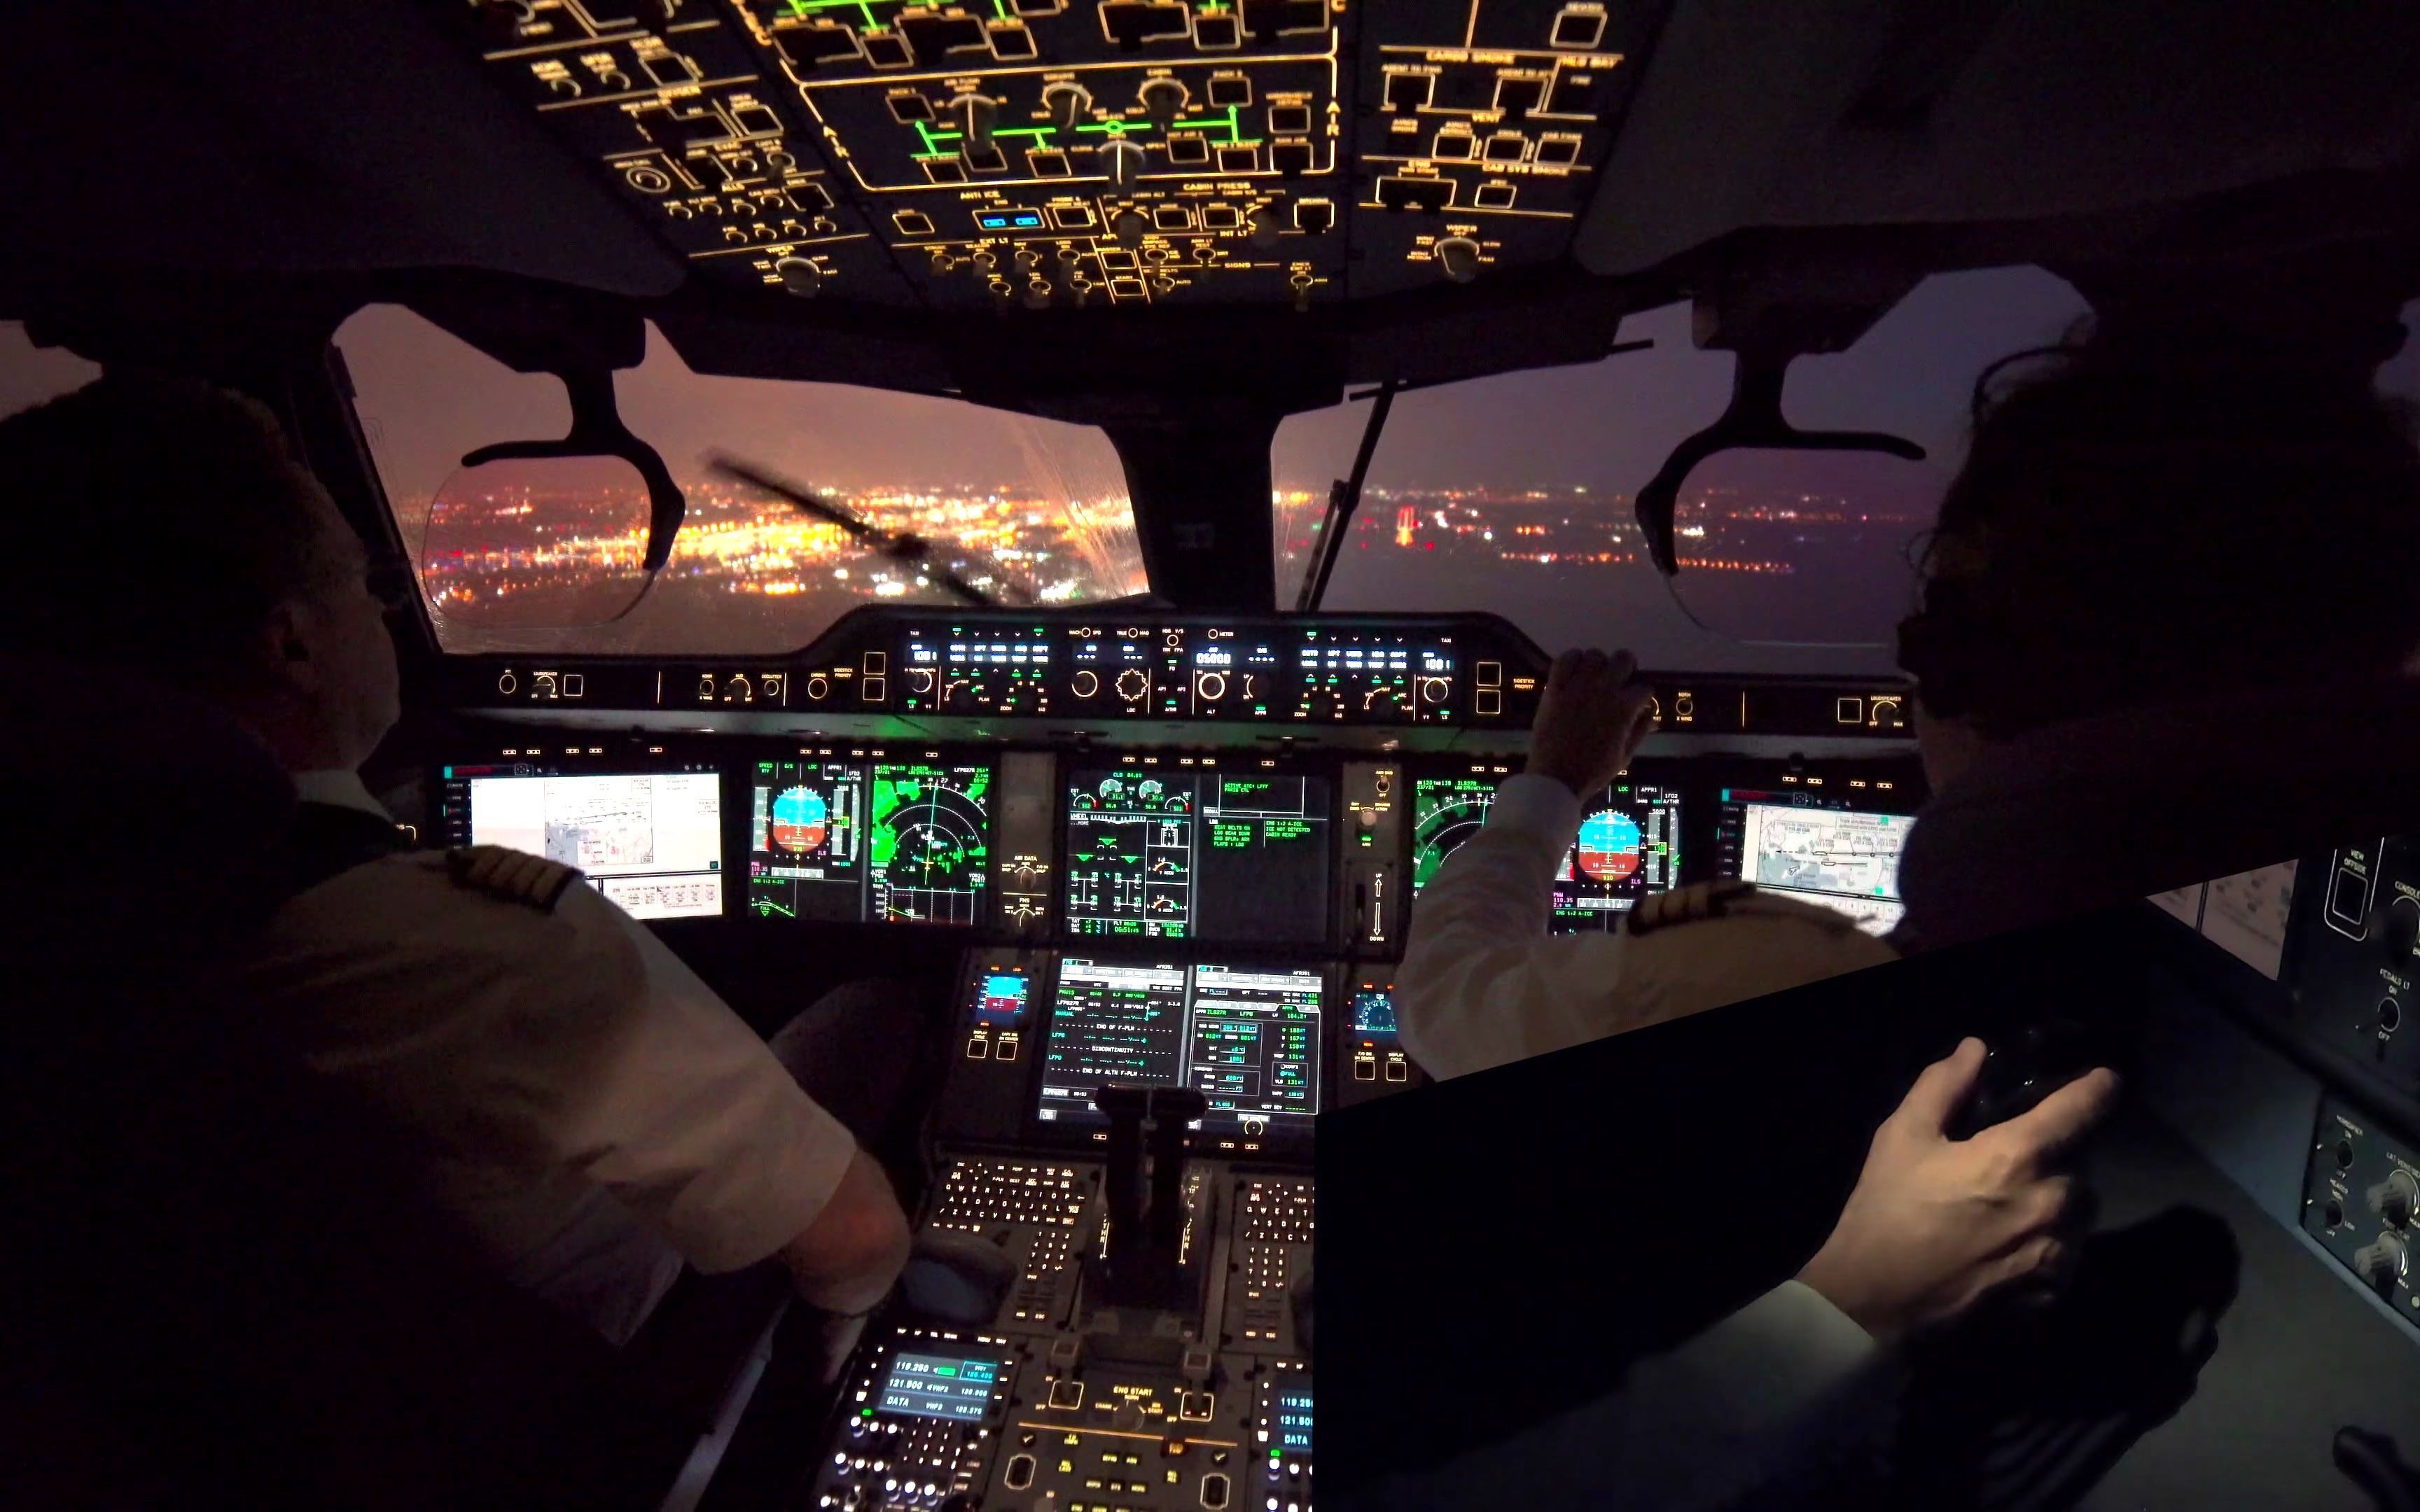 空客A350驾驶舱图片